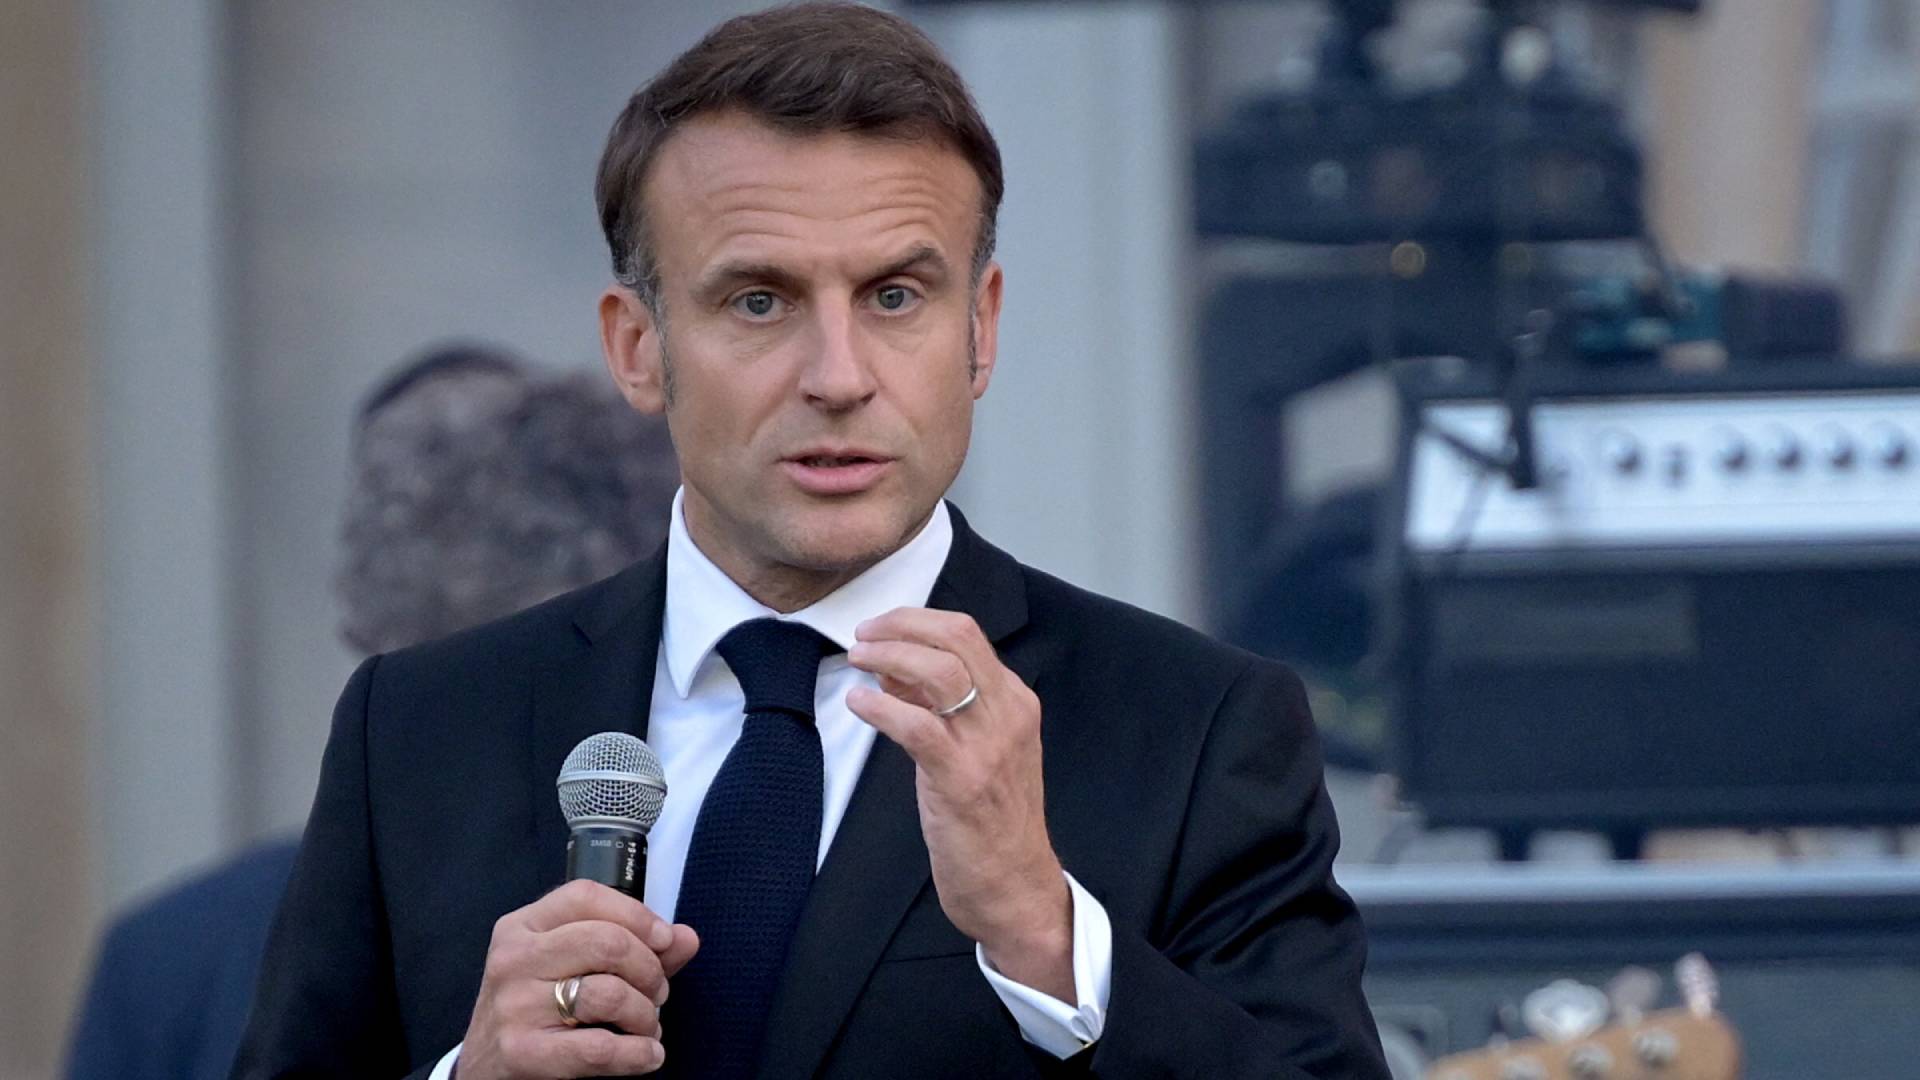 Ε.Μακρόν: «Δεν θα σταλούν Γάλλοι στρατιώτες στο εγγύς μέλλον για να πολεμήσουν στην Ουκρανία»